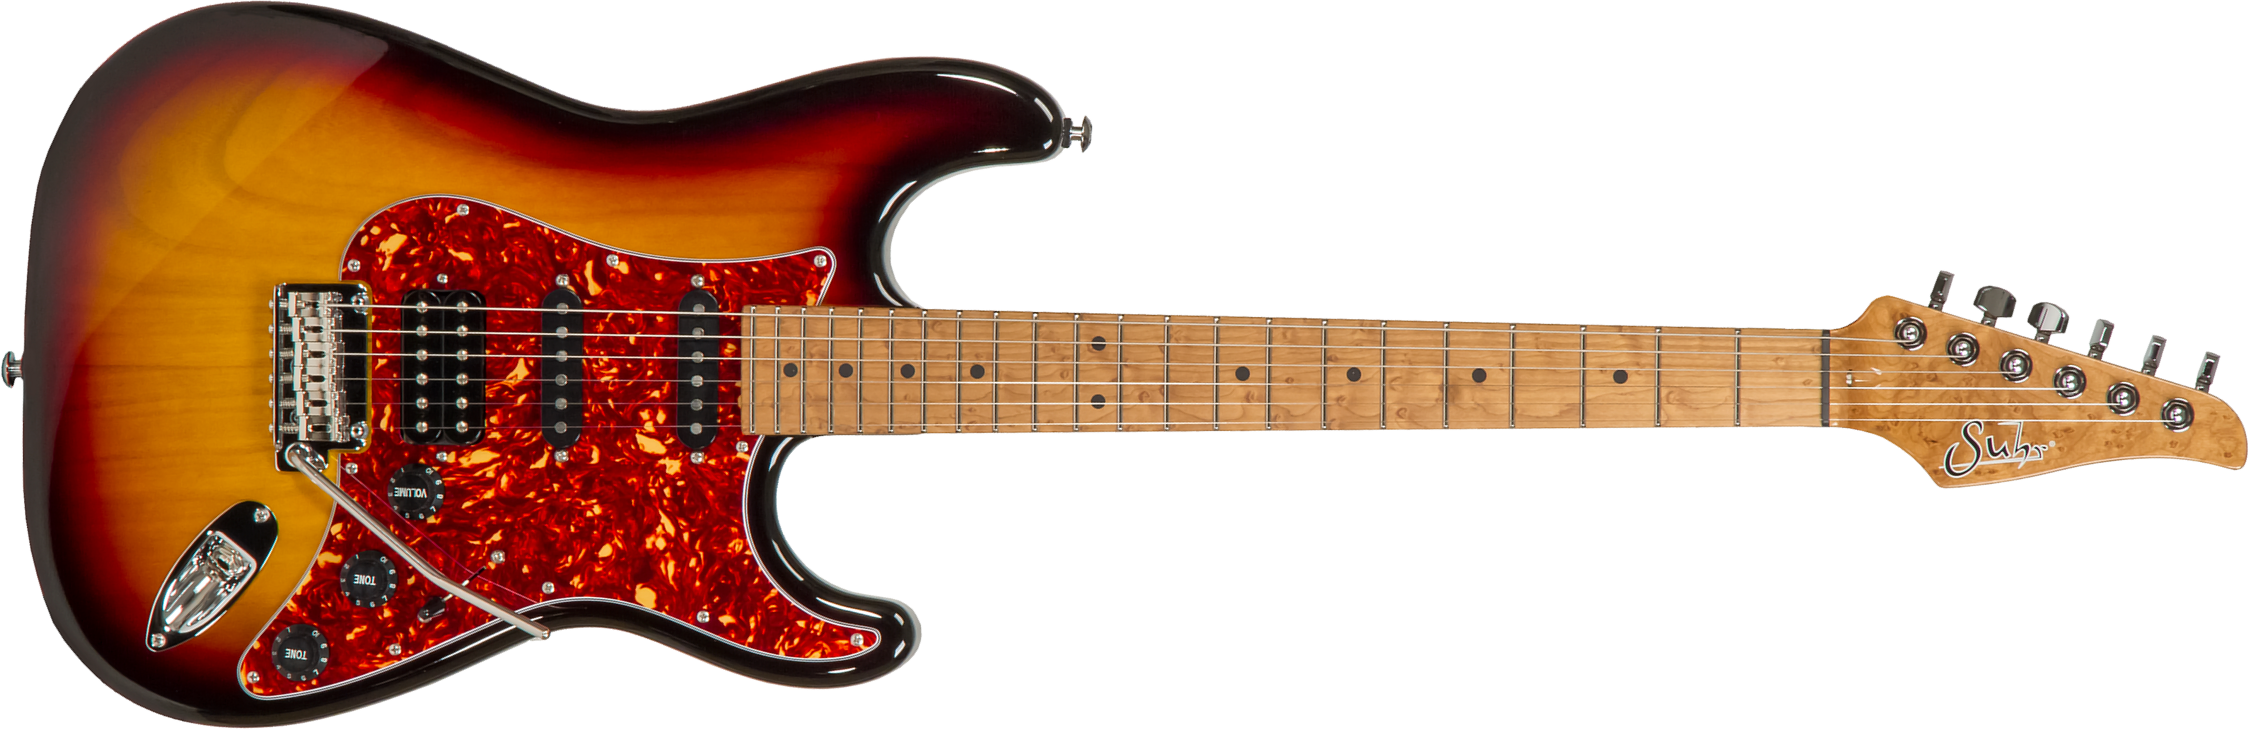 Suhr Classic S Paulownia 01-ltd-0021 Hss Trem Rw #70279 - 3-tone Burst - Elektrische gitaar in Str-vorm - Main picture